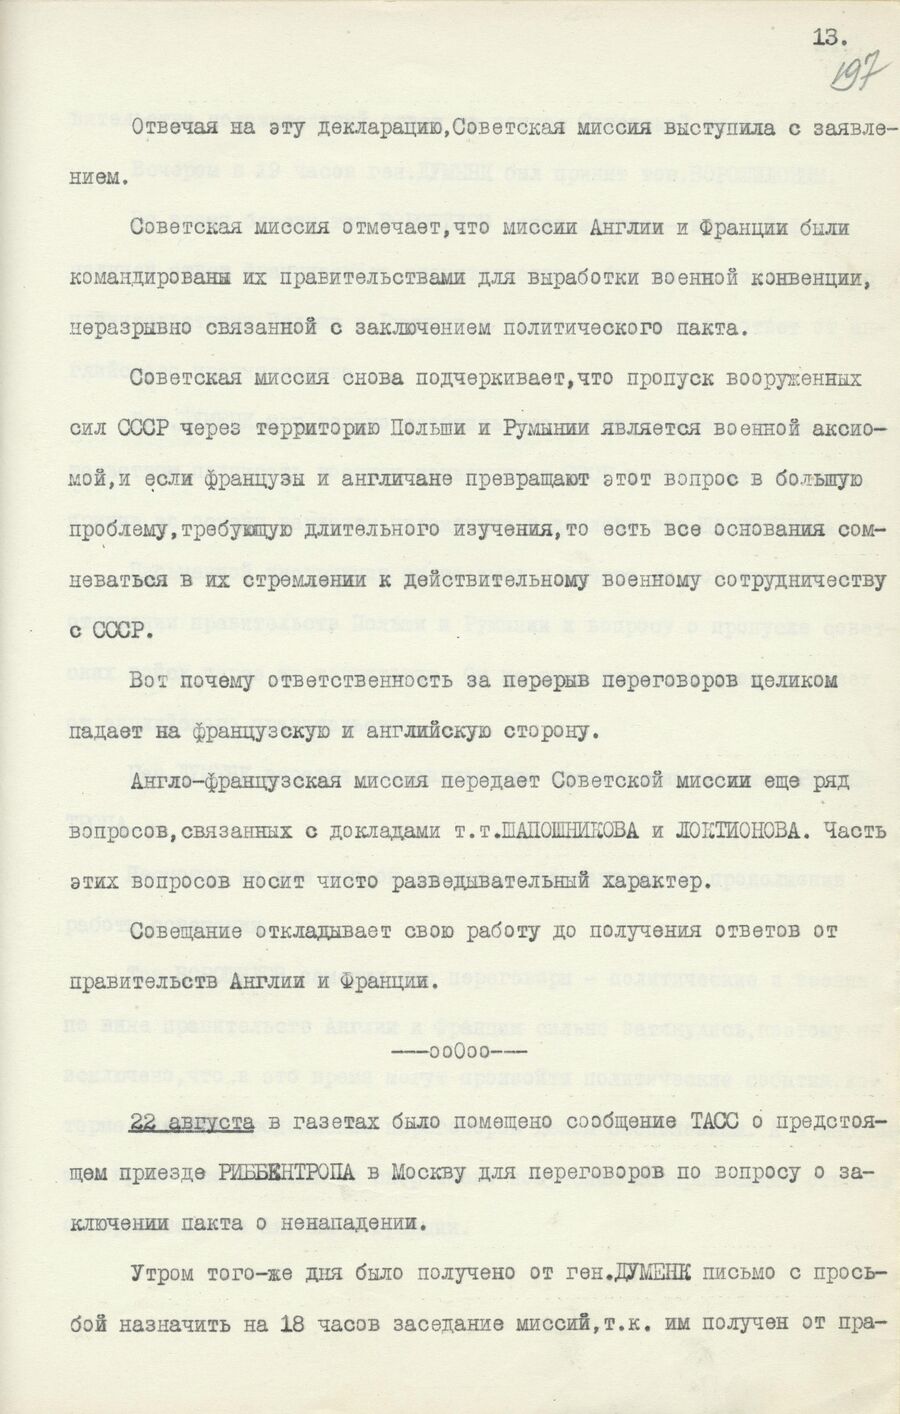 1939.08.26 Отчет о работе совещания. Лист 13